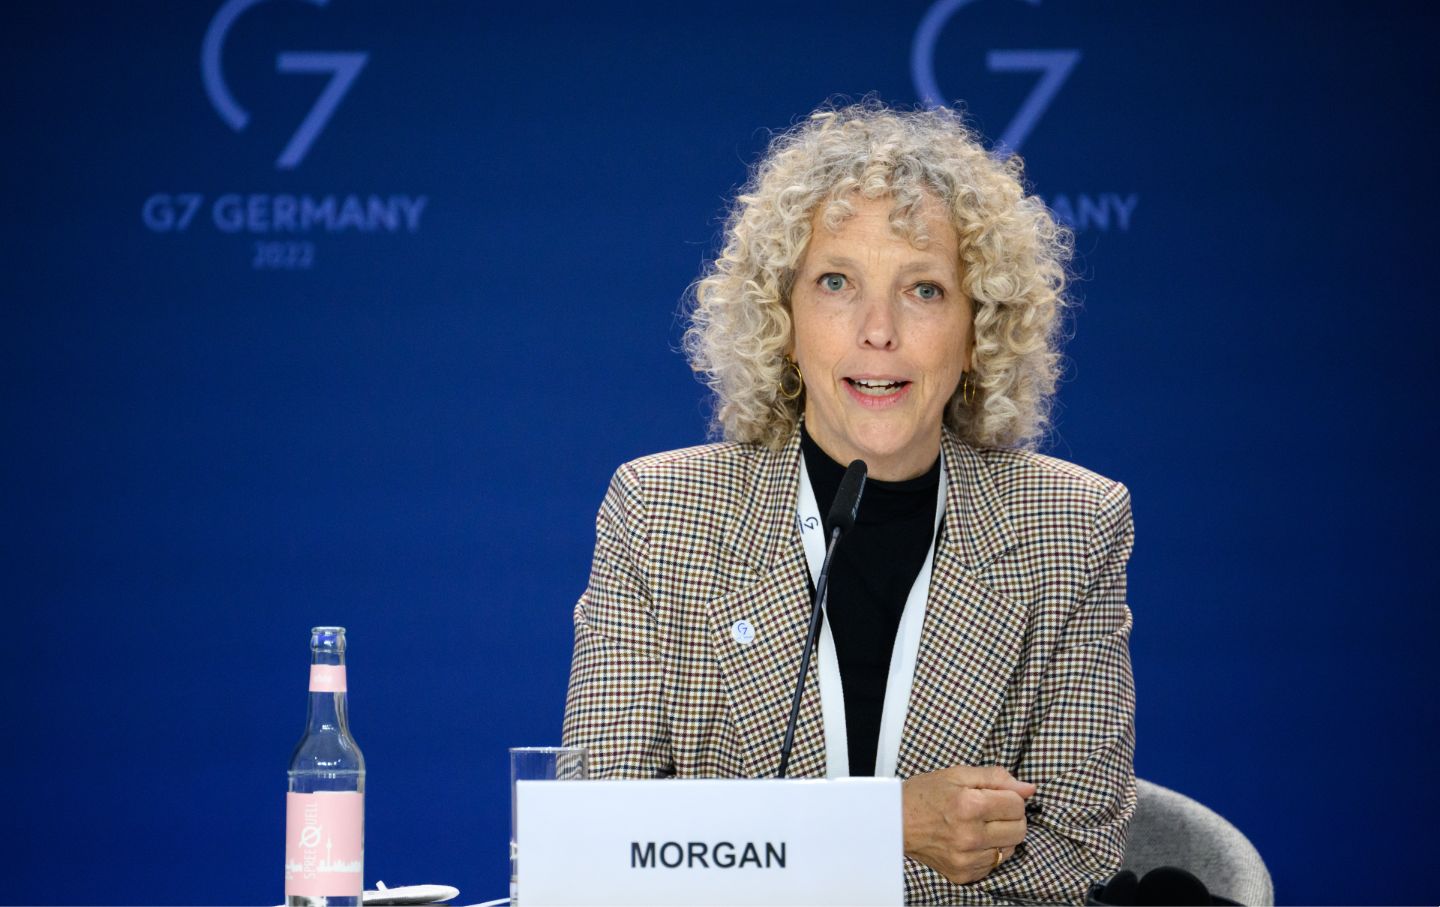 Nach dem G7-Gipfel sagt der deutsche Klimabeauftragte, dass die reichen Länder immer noch hinterherhinken